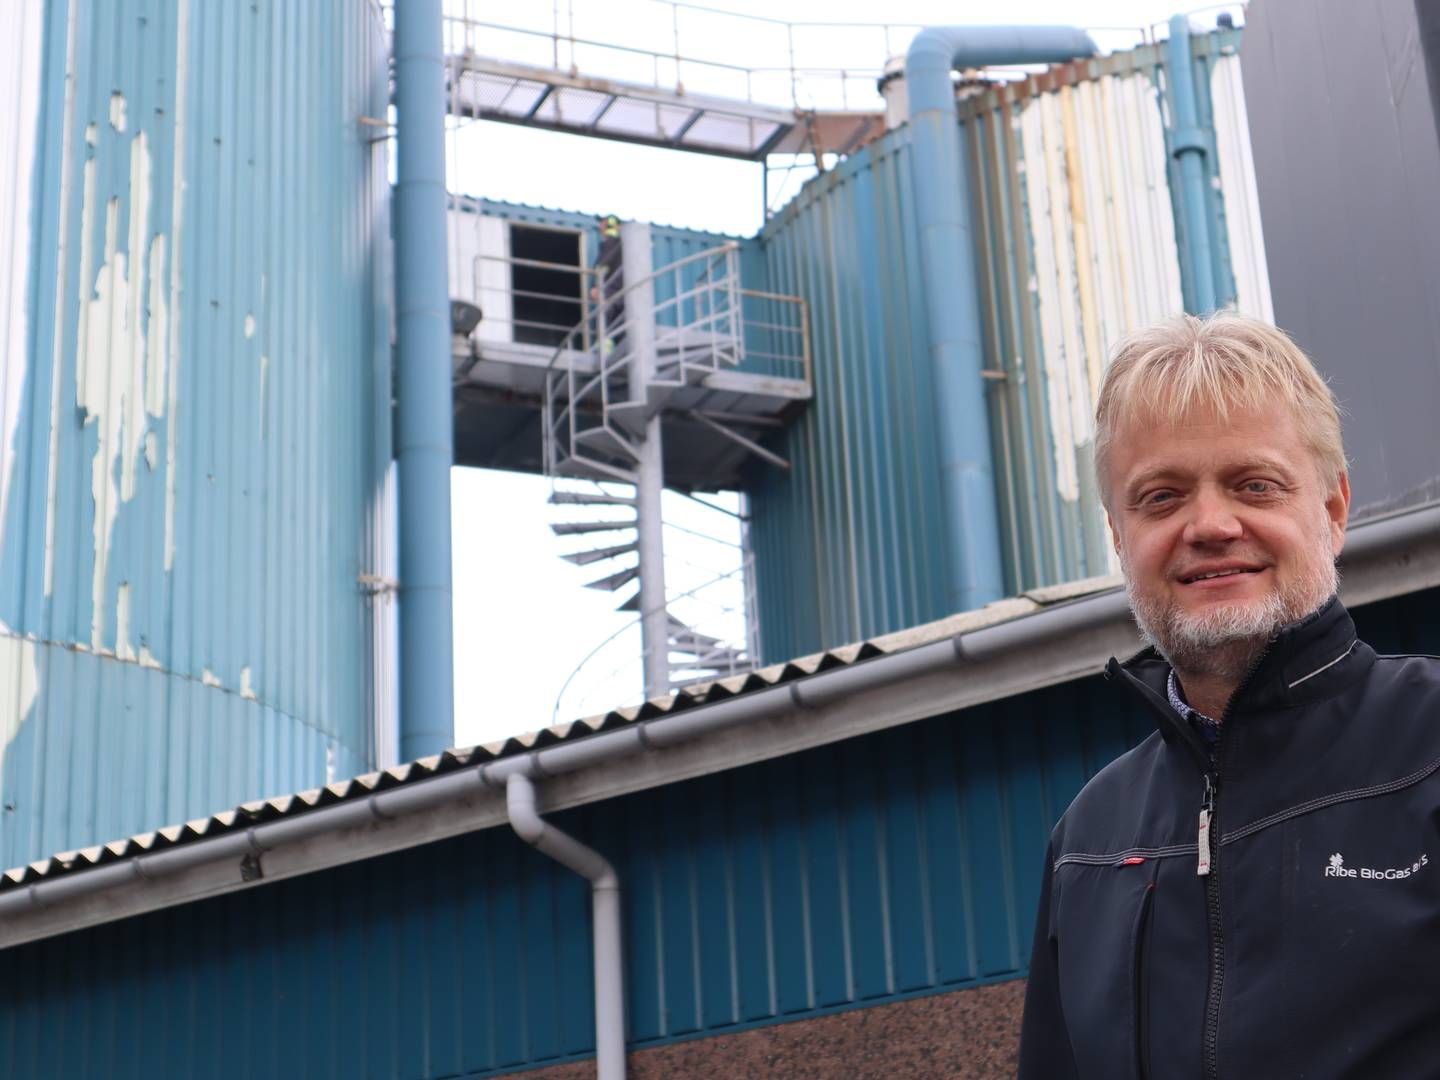 ”Vi ser ind i nogle store prisstigninger på landbrugets biomasser, der fra det ene år til det andet er steget med en 30-40 procent i pris,” siger Ribe Biogas' adm. direktør, Claus L. Mikkelsen.